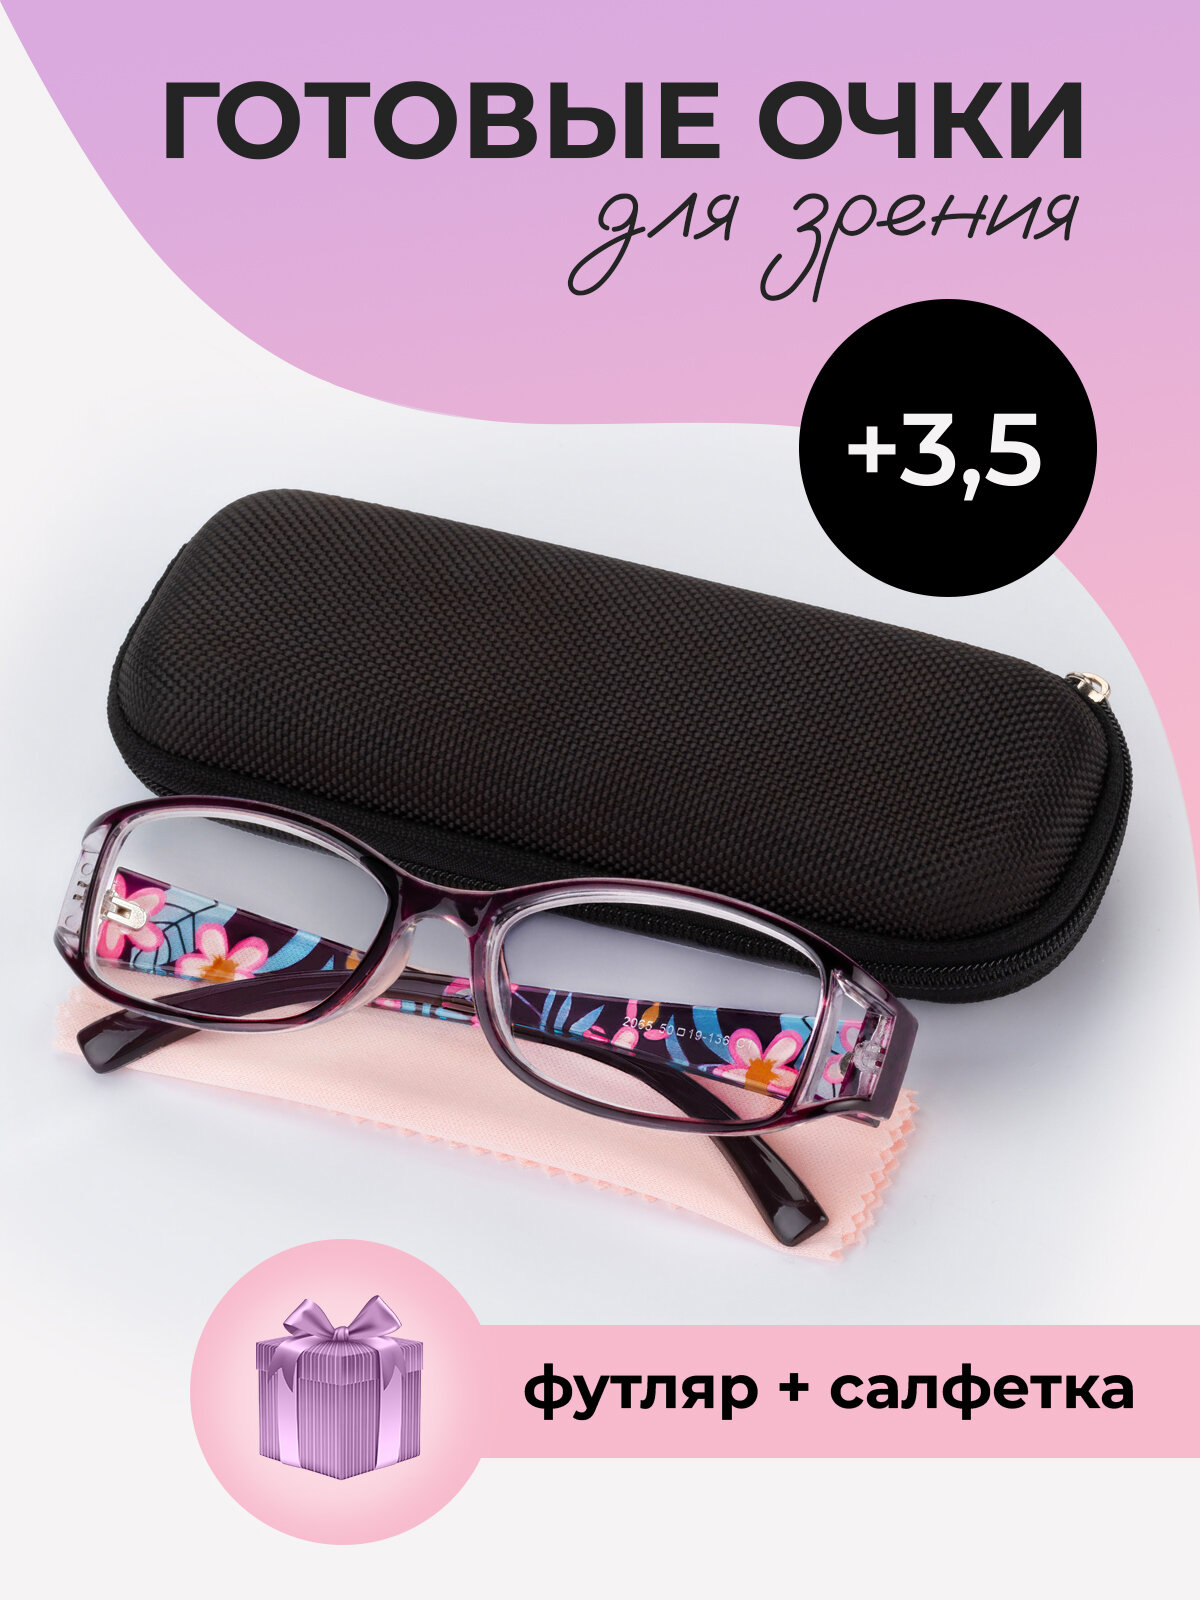 Готовые очки для зрения женские корригирующие с диоптриями +3,5